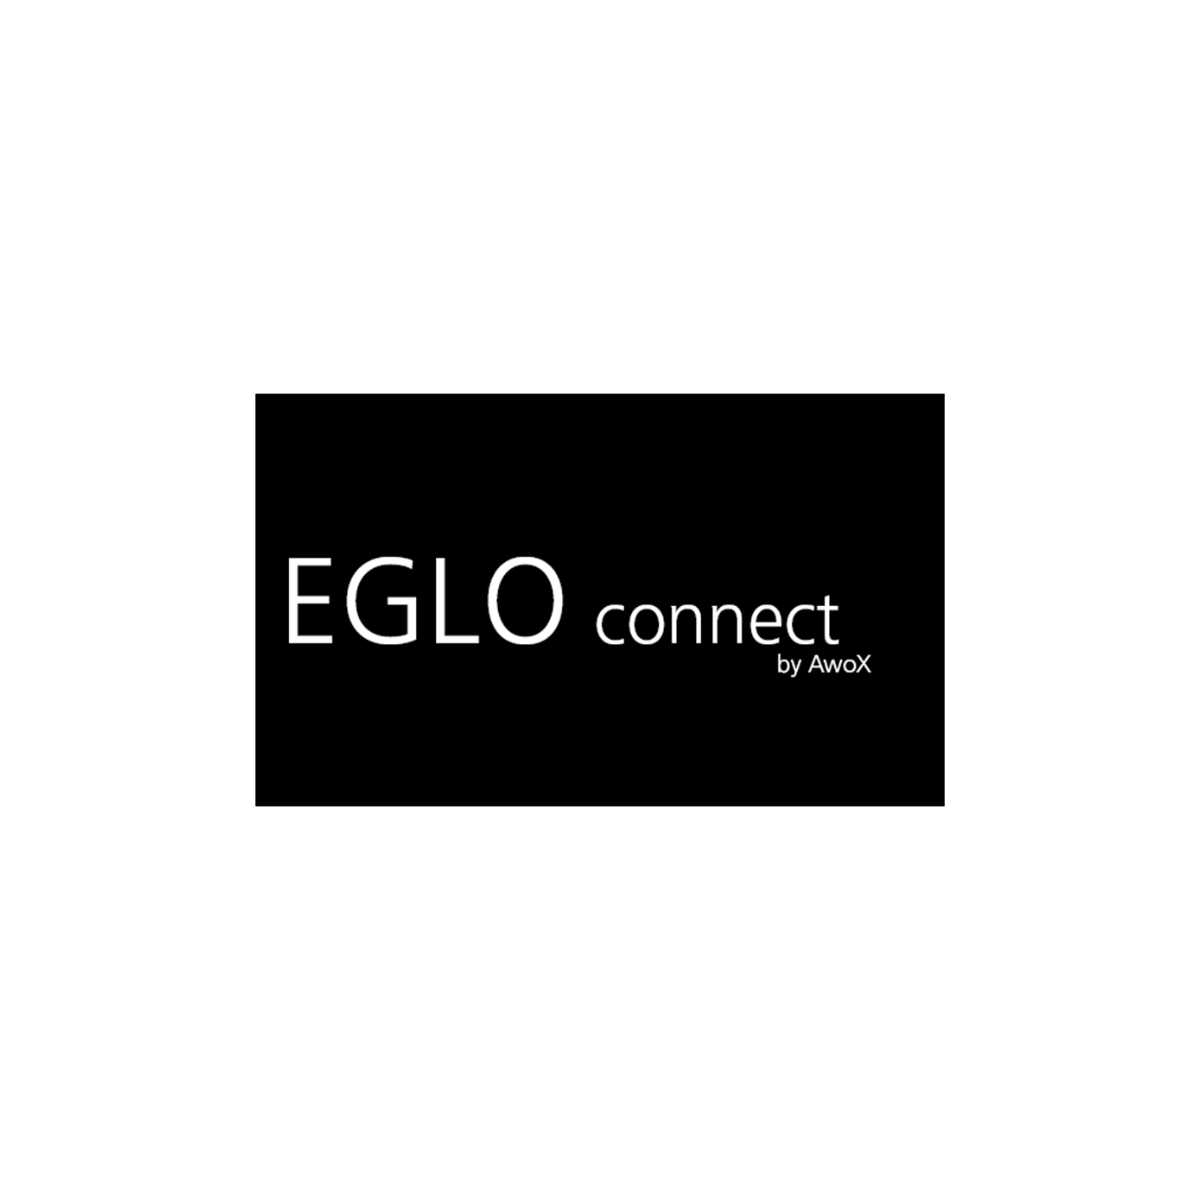 EGLO connect